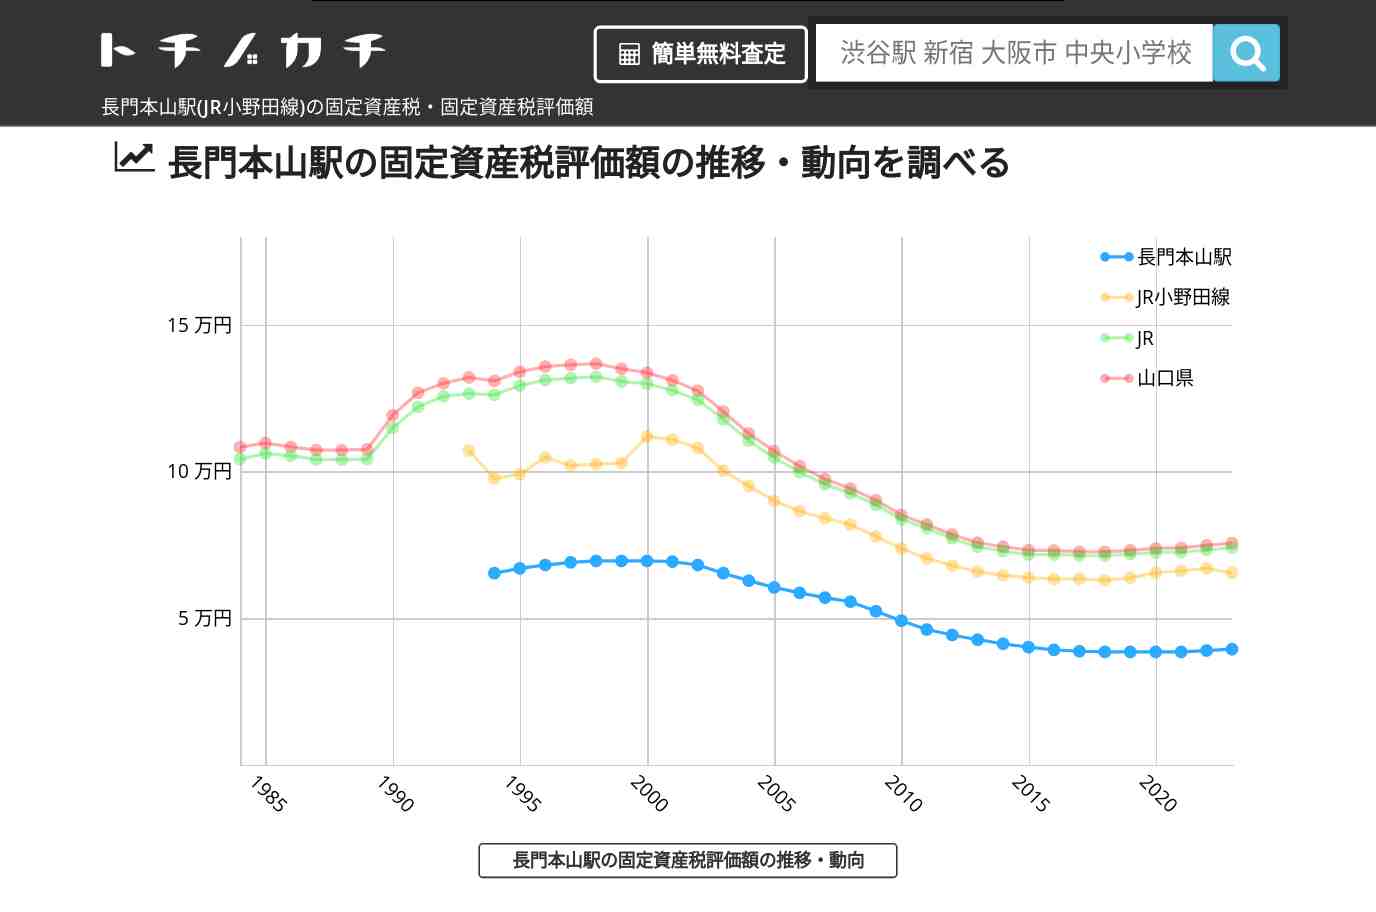 長門本山駅(JR小野田線)の固定資産税・固定資産税評価額 | トチノカチ